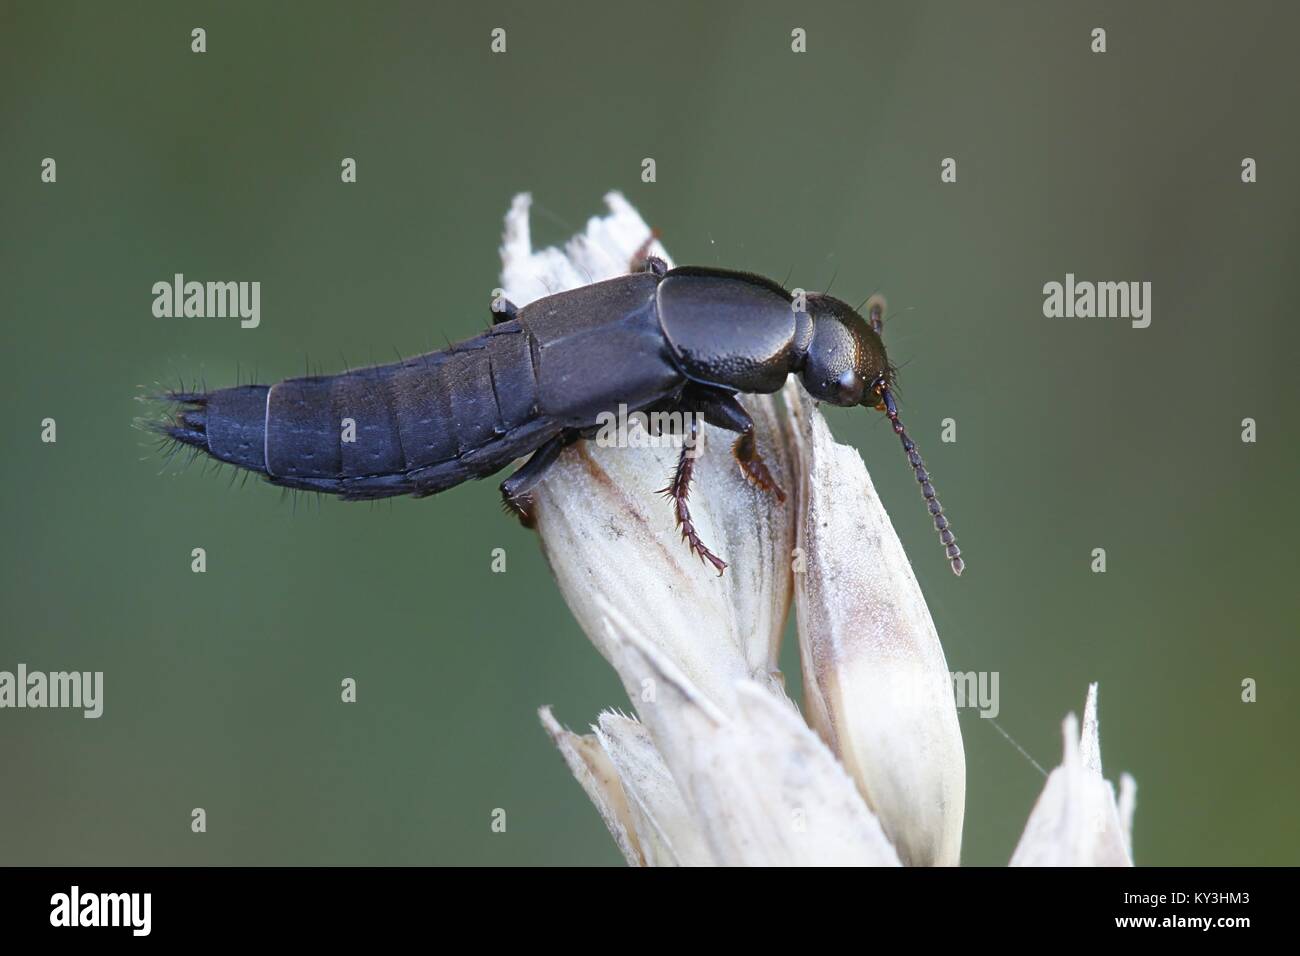 Rove escarabajo posando en el trigo Foto de stock